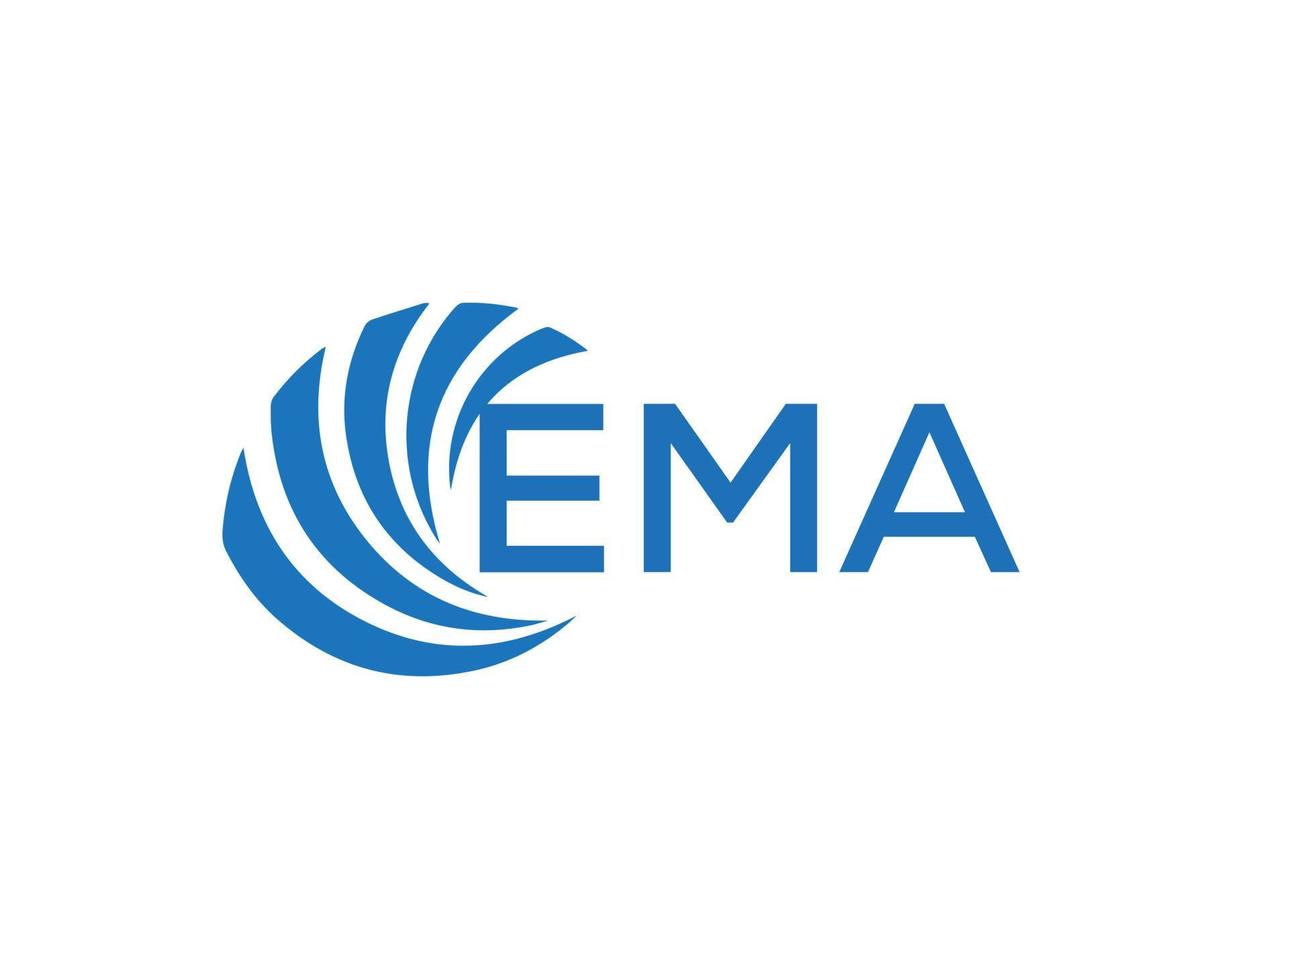 EMA letter logo design on white background. EMA creative circle letter logo concept. EMA letter design. vector